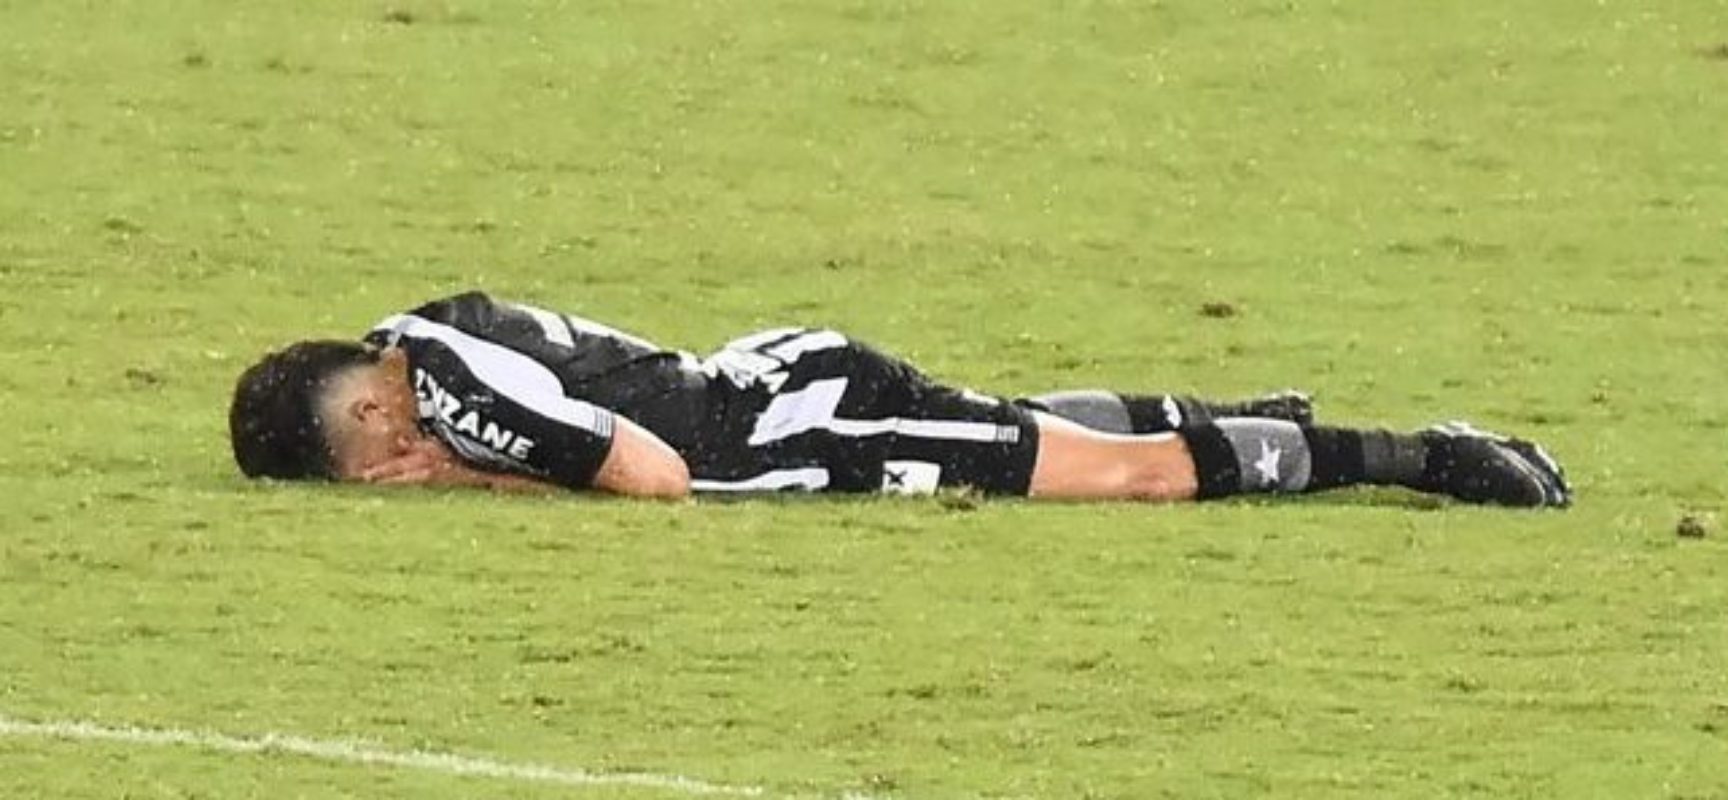 Botafogo perde, cai no Brasileiro e, a expecatitva é que continue caindo. Time muito ruim!